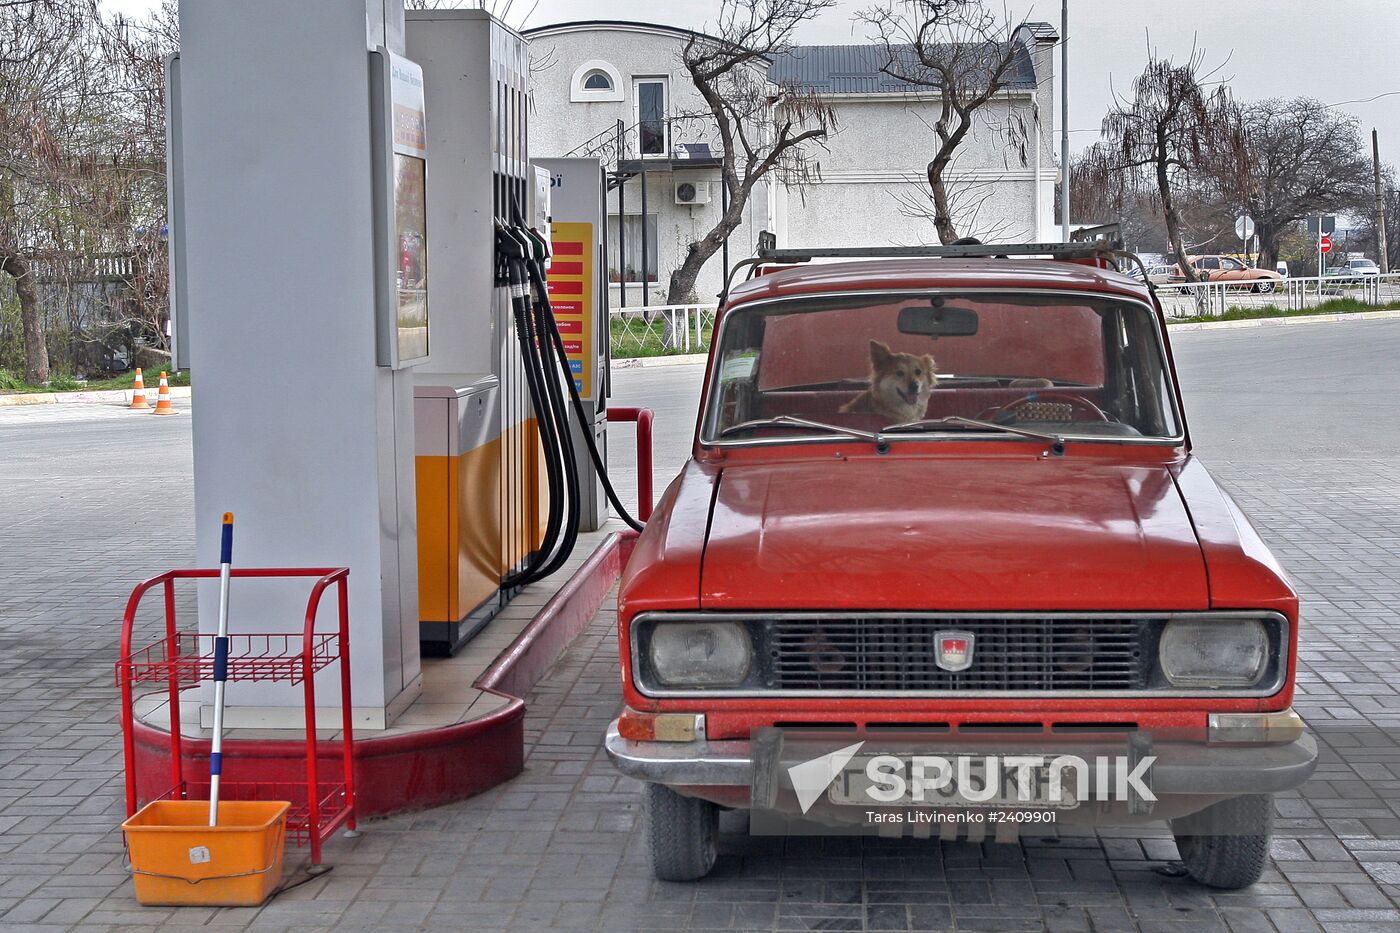 Gas stations in Simferopol